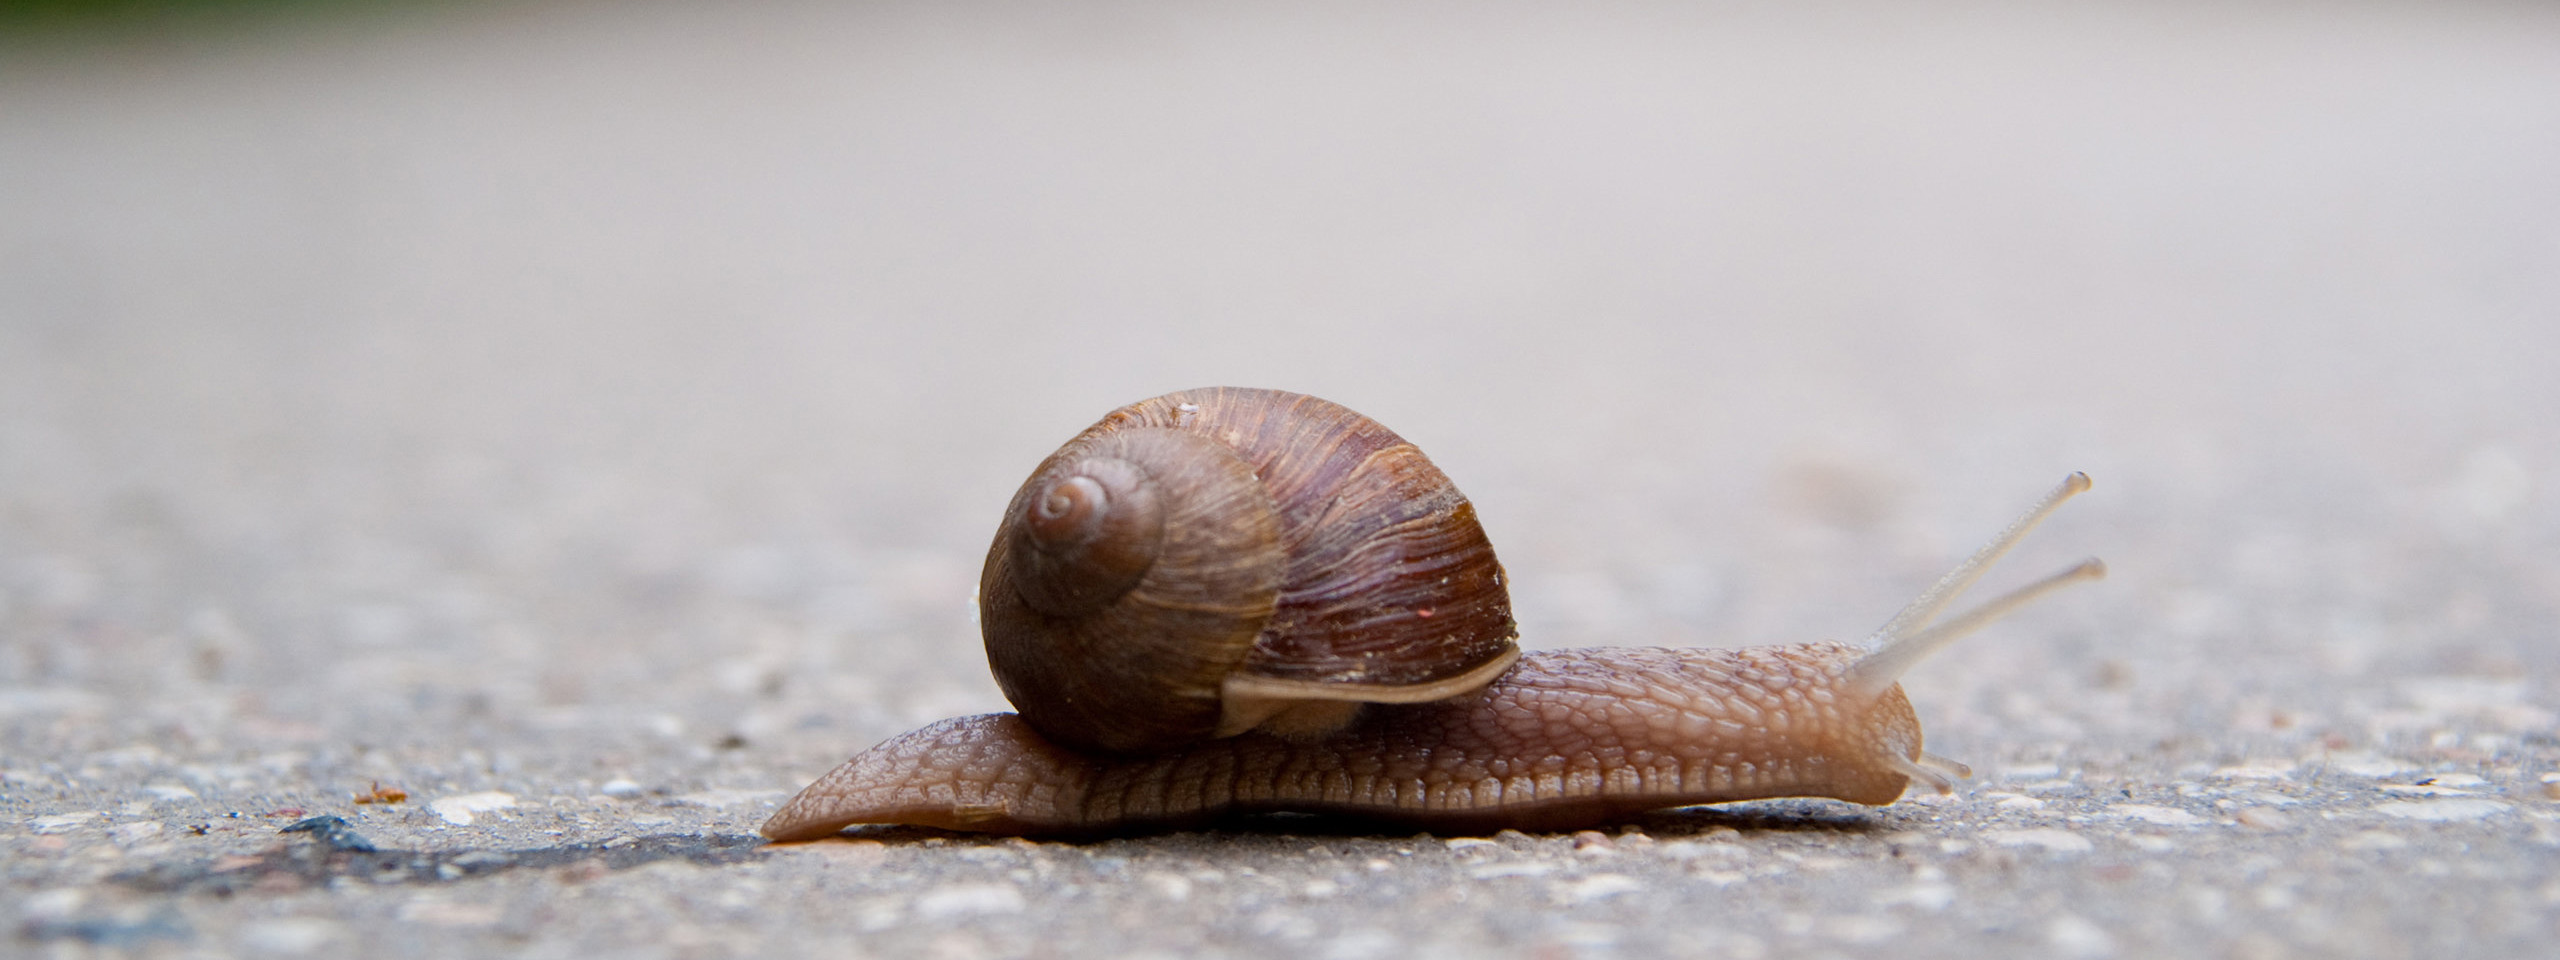 Slow as a snail